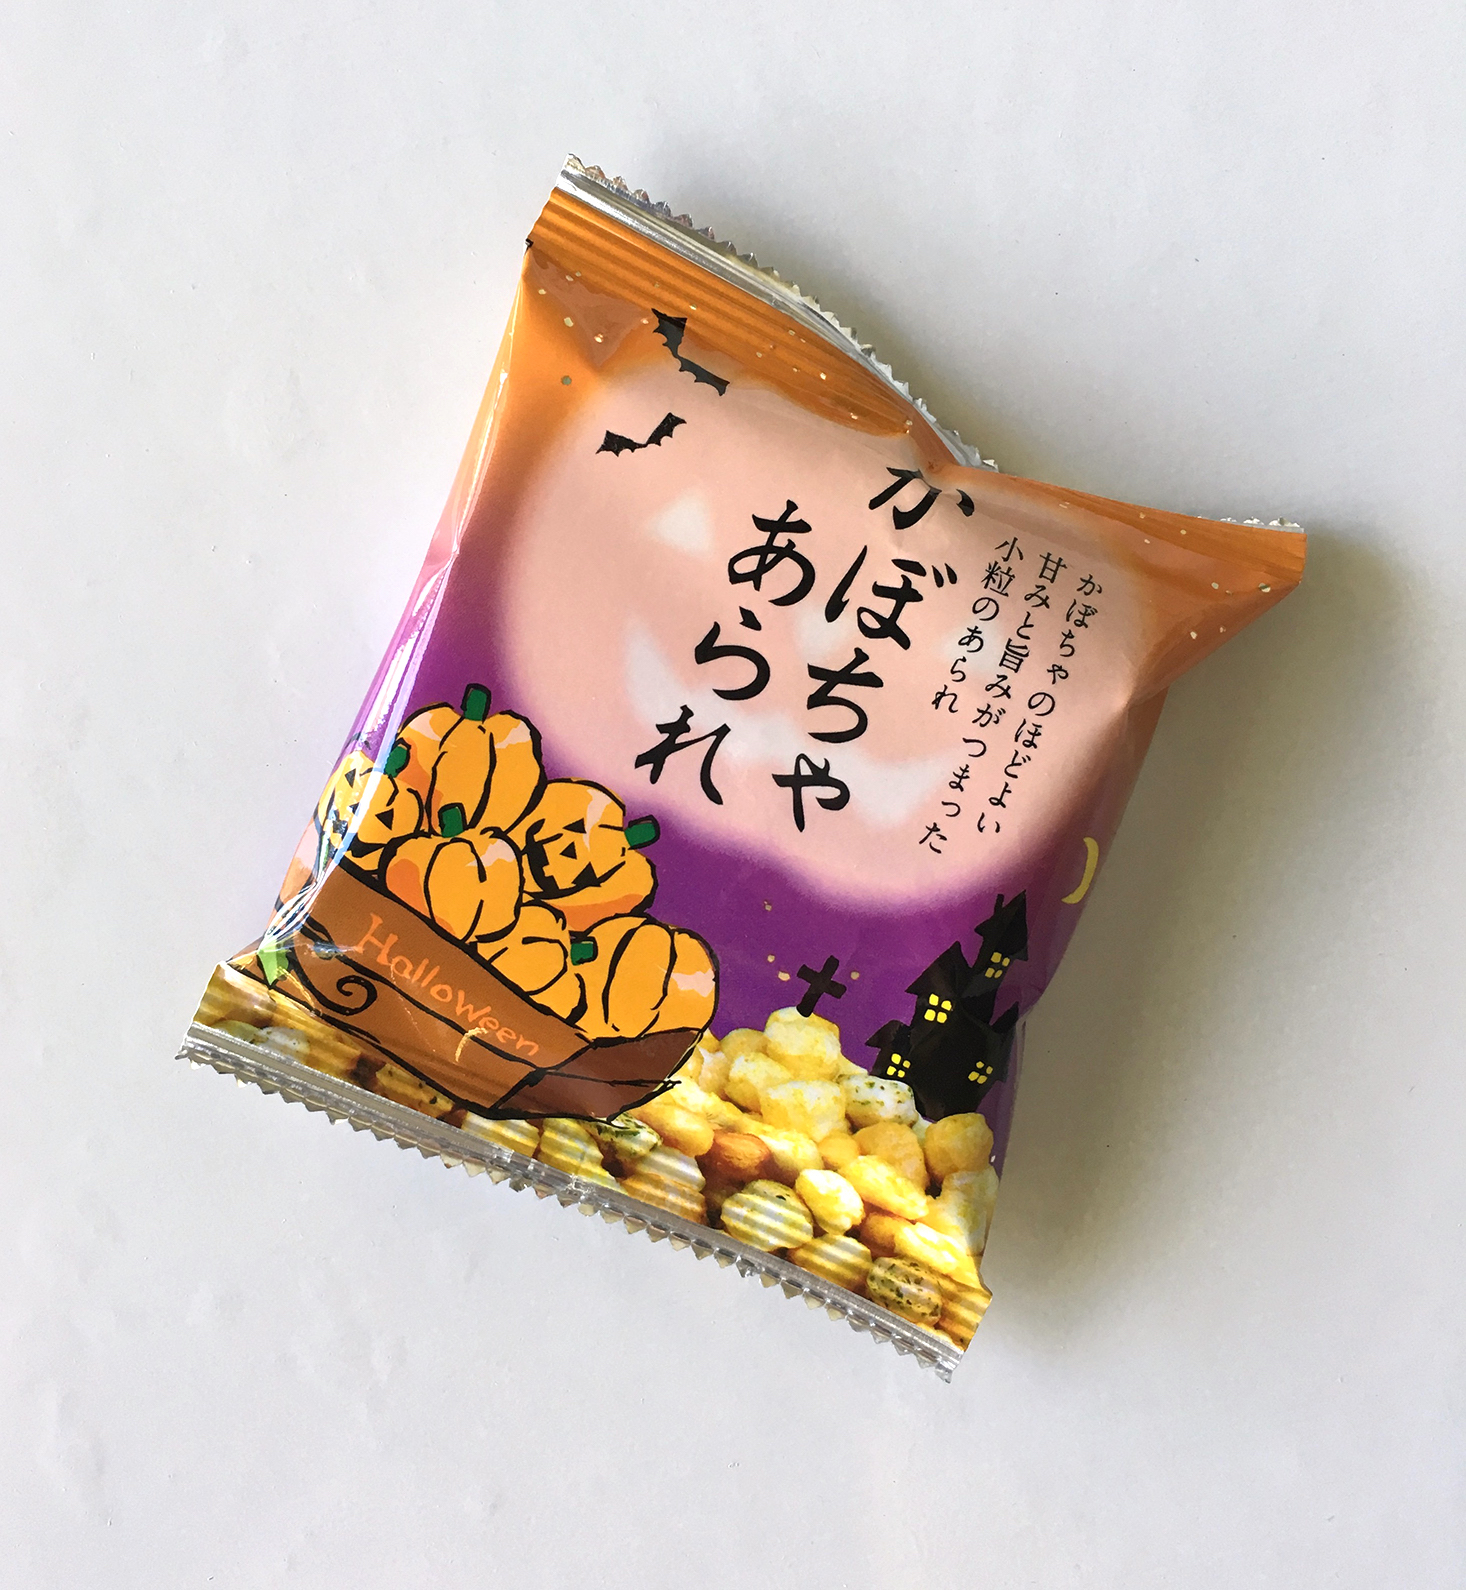 snakku-tasting-box-october-2016-corn-puffs